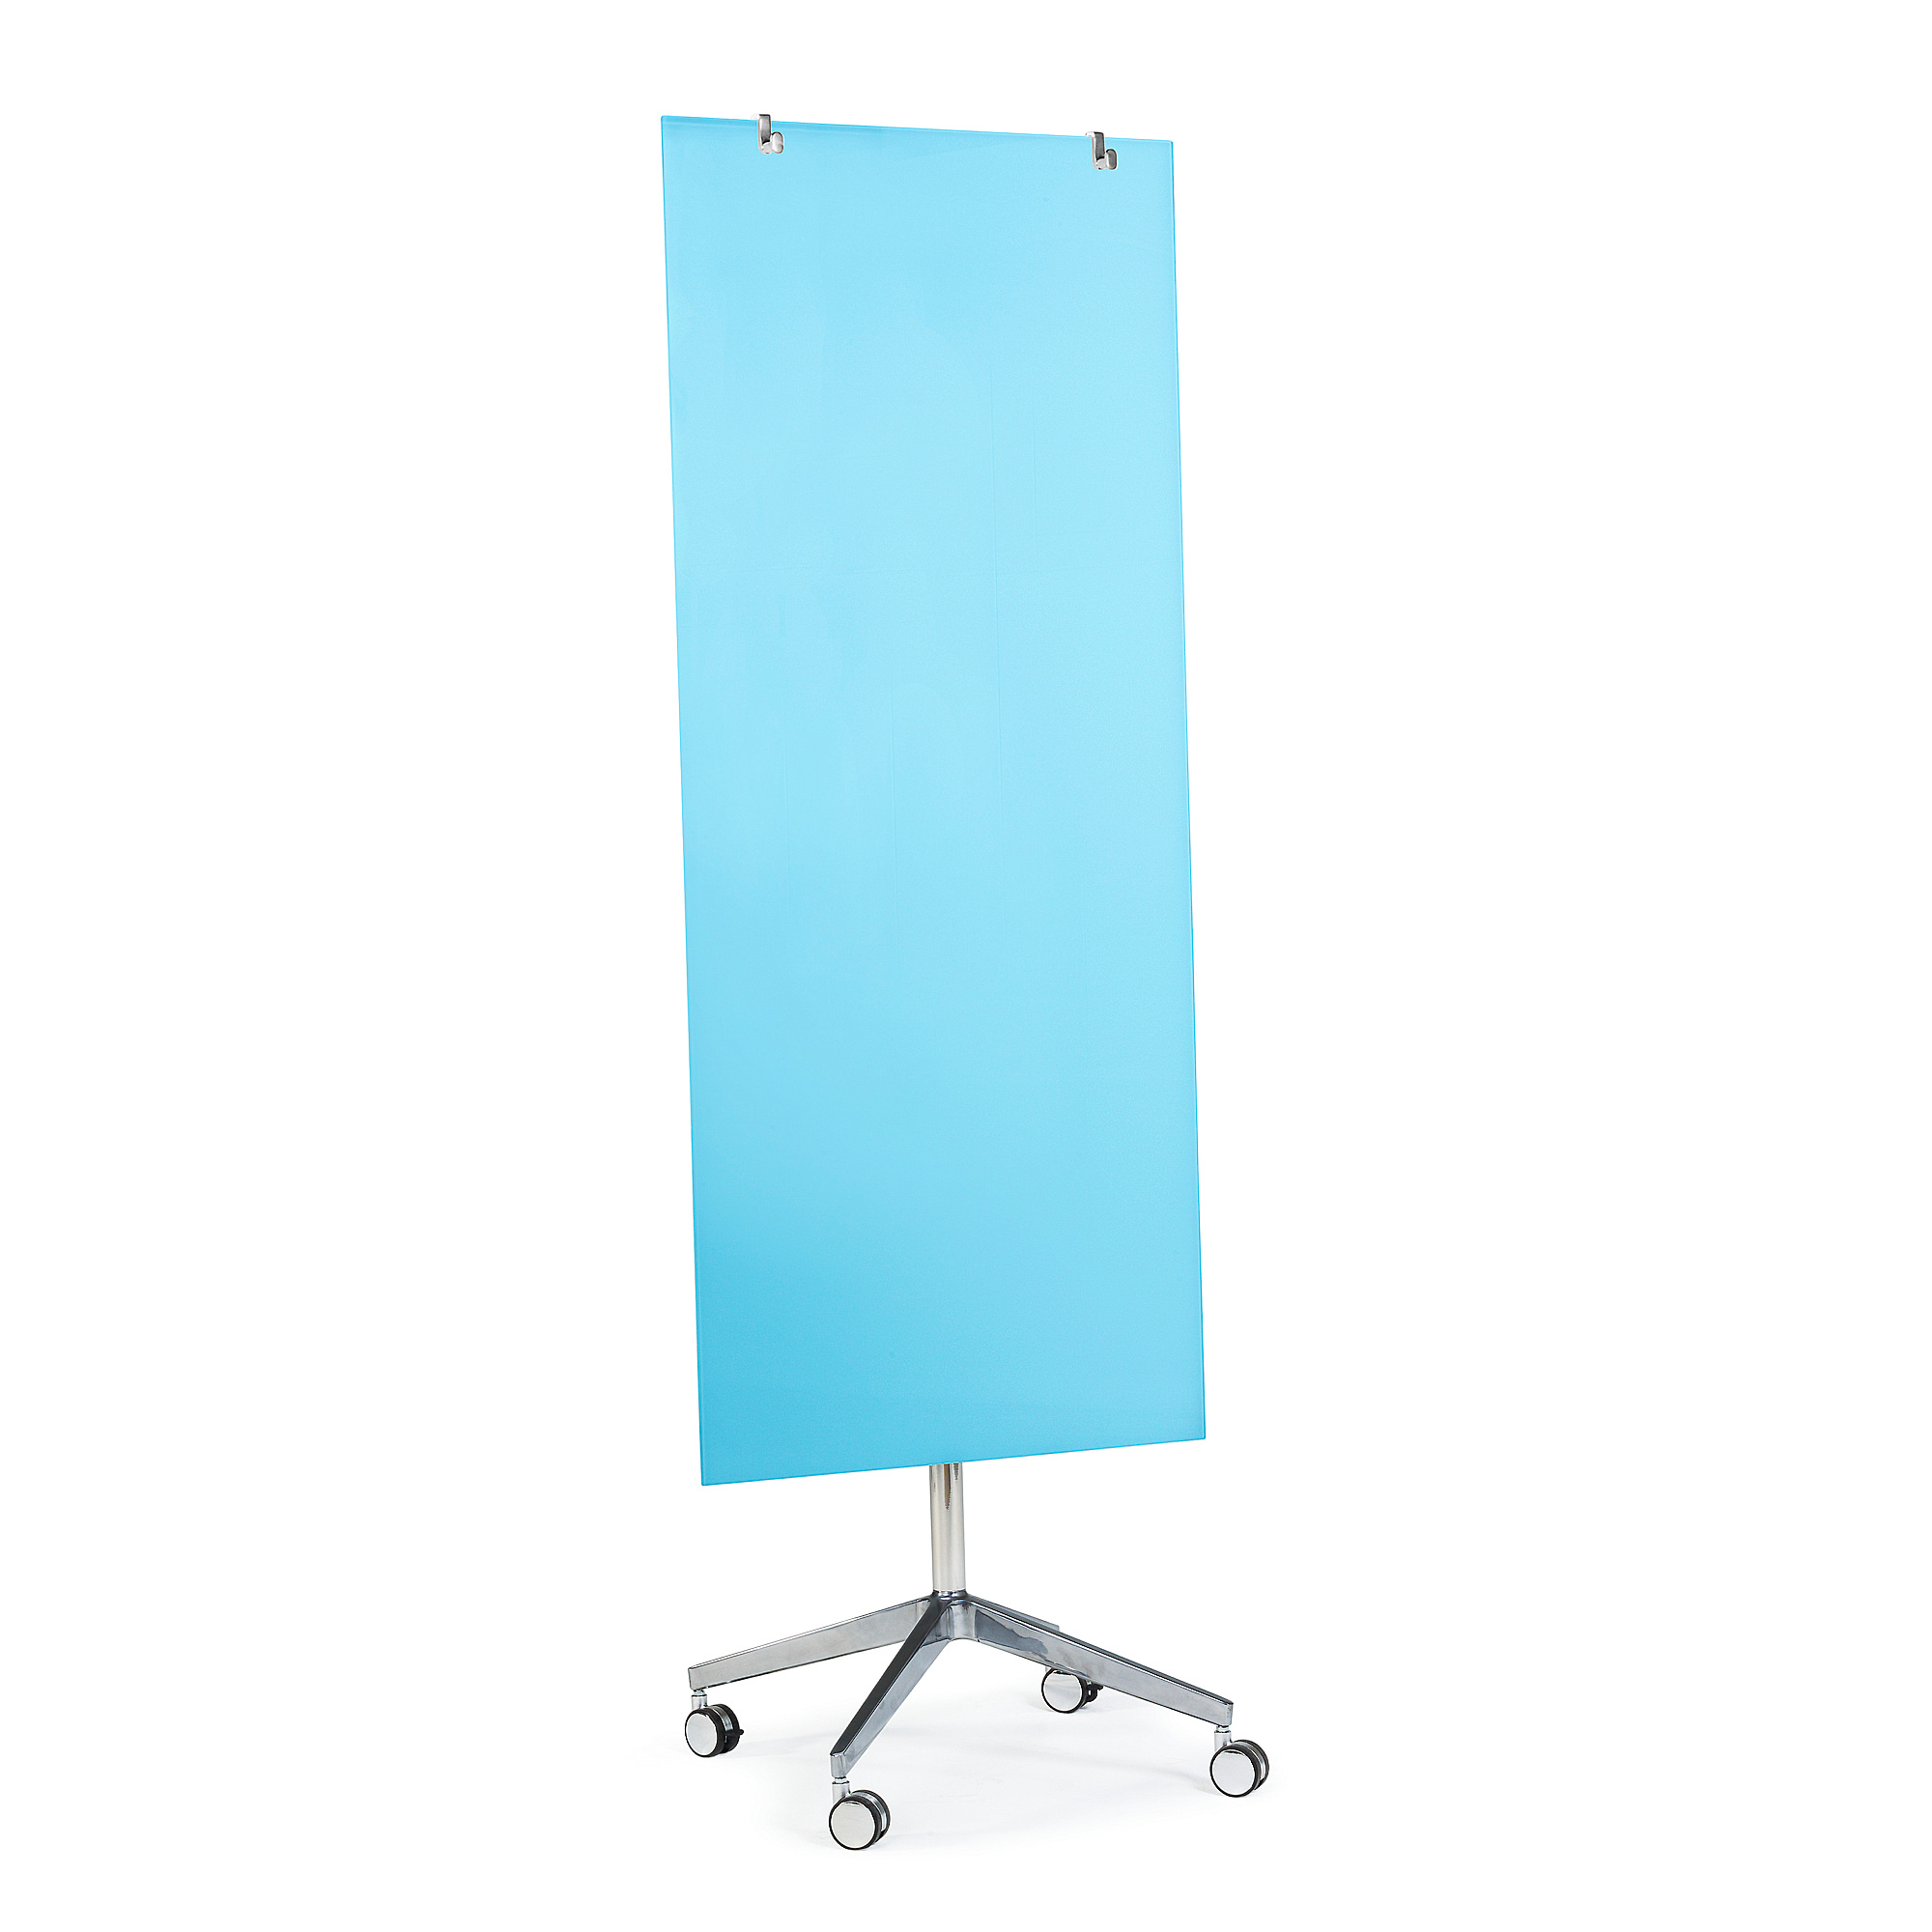 Mobilní skleněná tabule STELLA, magnetická, světle modrá